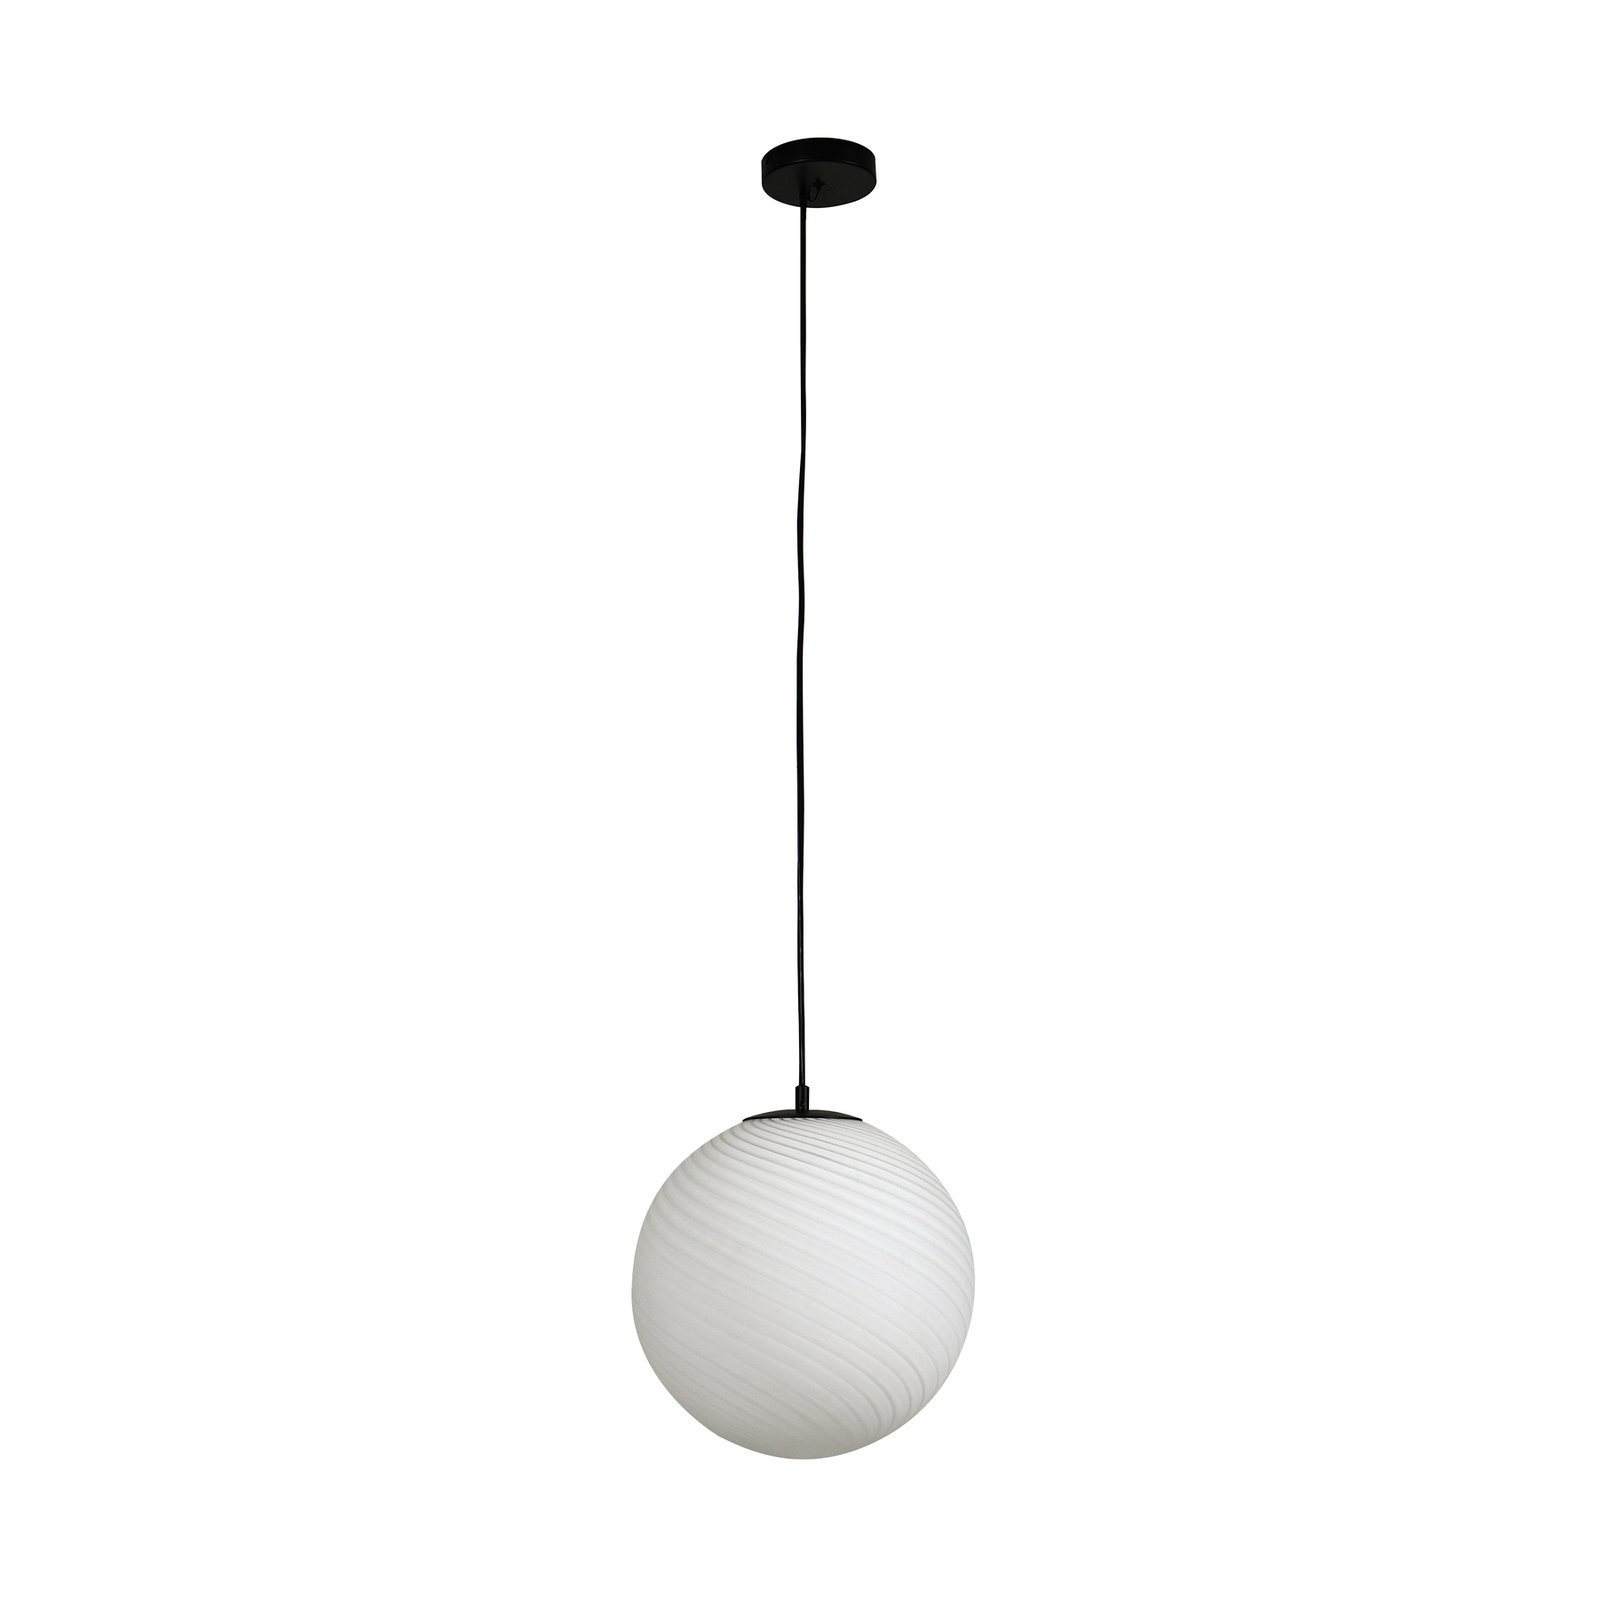 Lampa wisząca Lucande Kestralia, biała, szkło, Ø 36,8 cm, E27